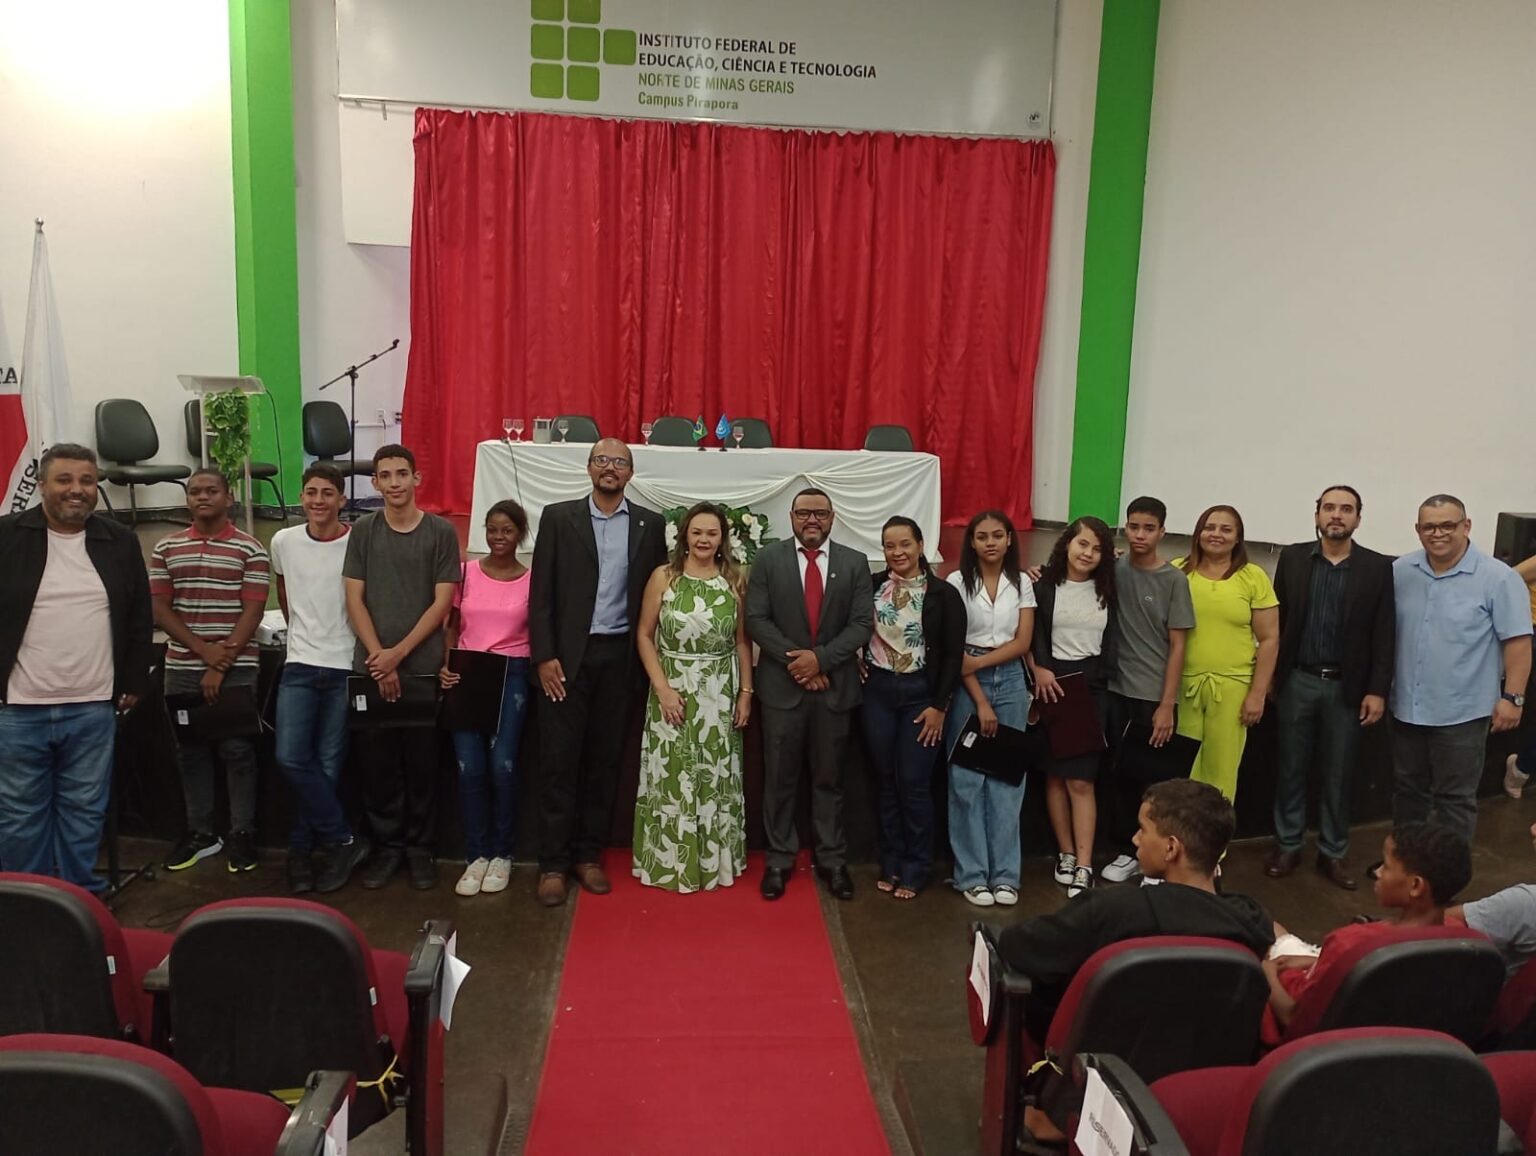 Secretaria de Pirapora participa de evento de Educação do IFNMG